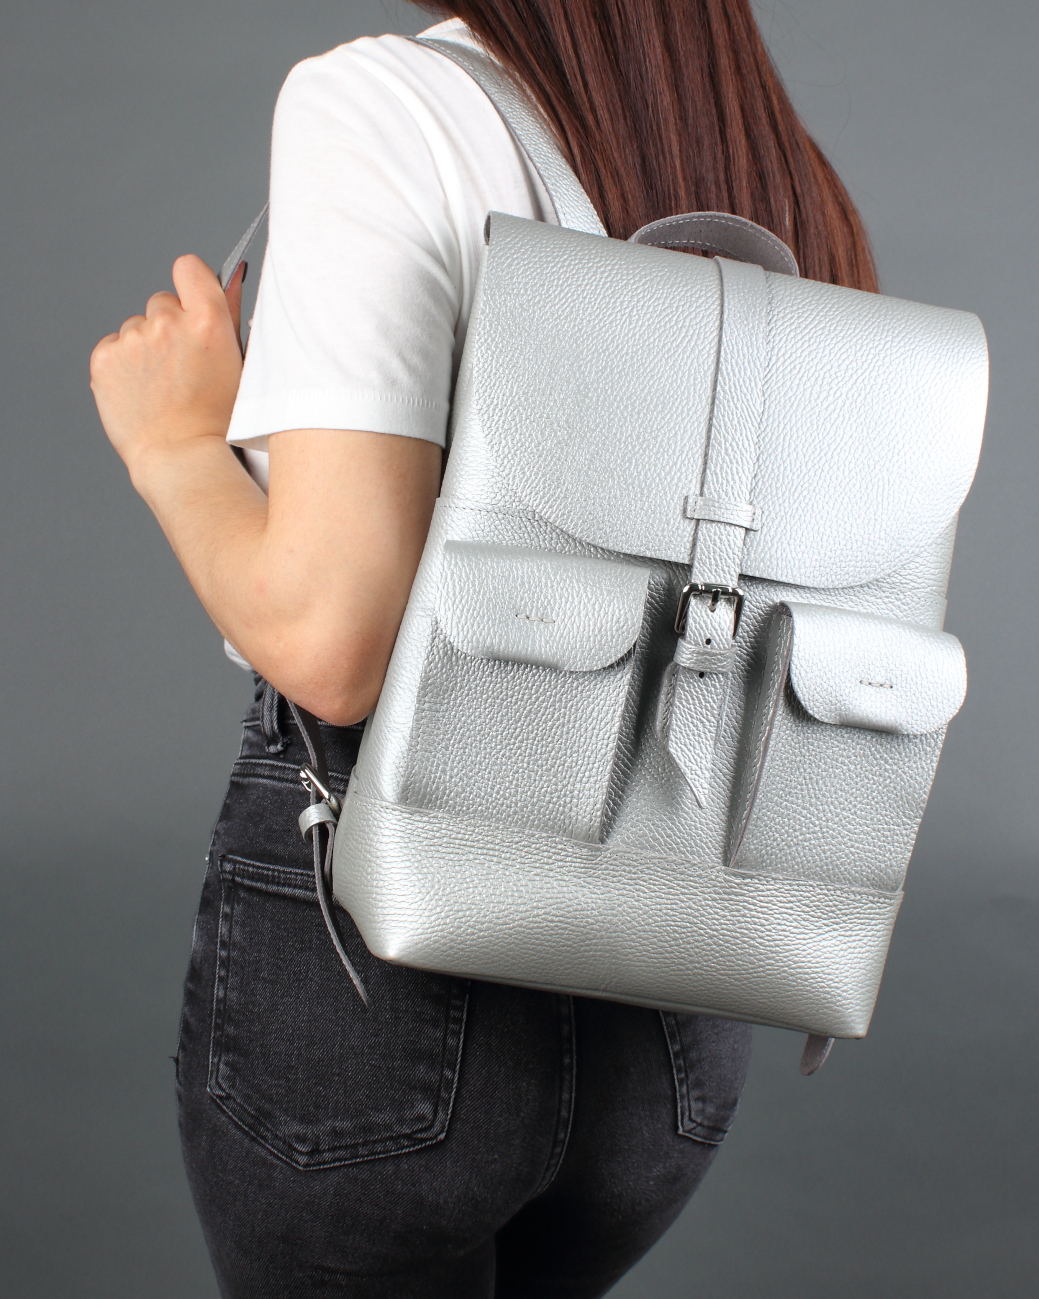 Женский рюкзак из натуральной кожи серебристый B010 silver grain